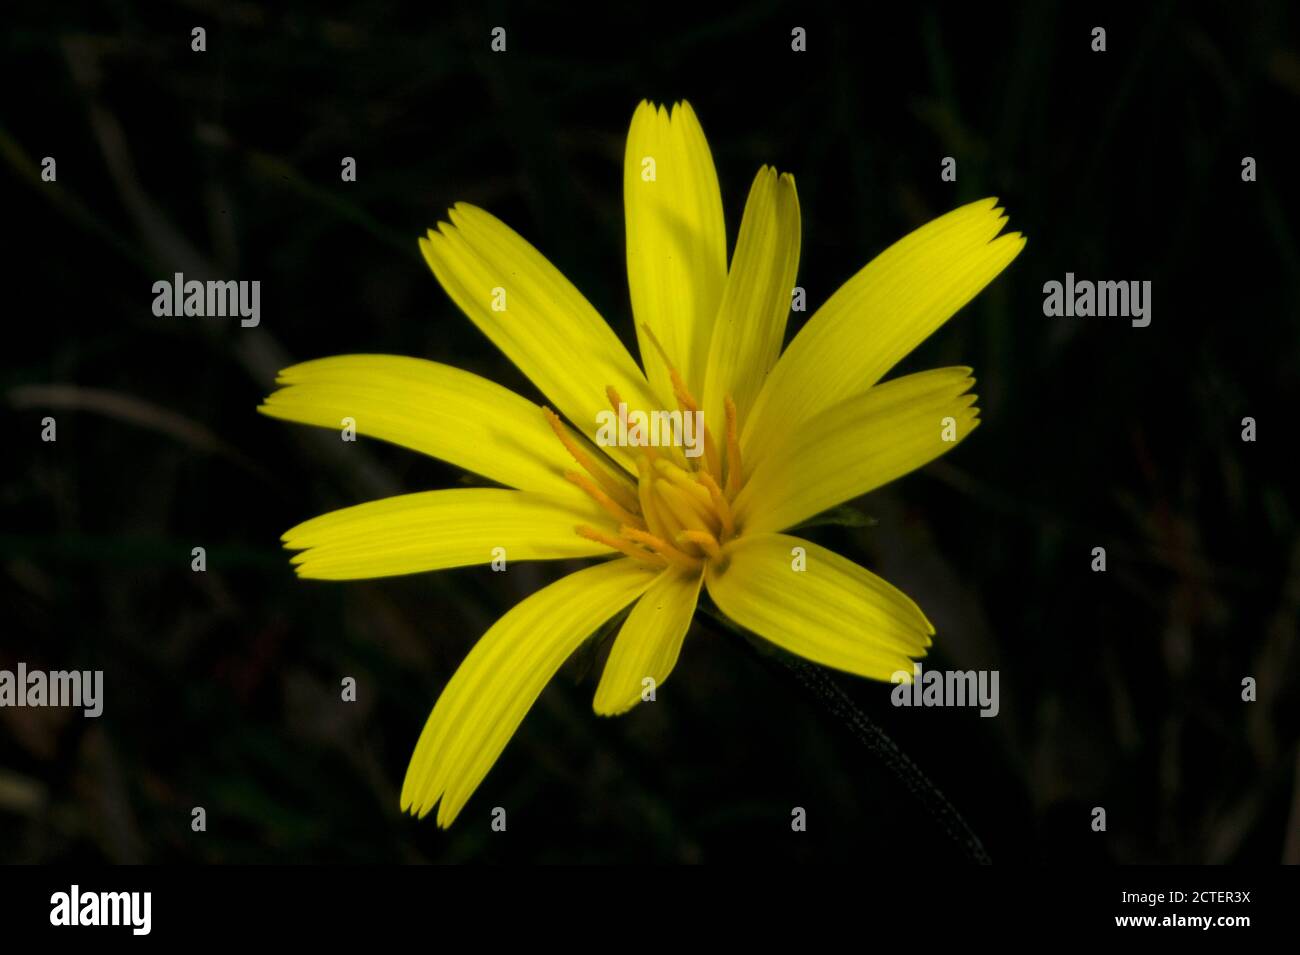 Eine Yam Daisy Blume in voller Blüte mit einer wunderschönen gelben Blume - unter der Erde ist eine essbare Knolle - die ihr ihren Namen gibt. Stockfoto